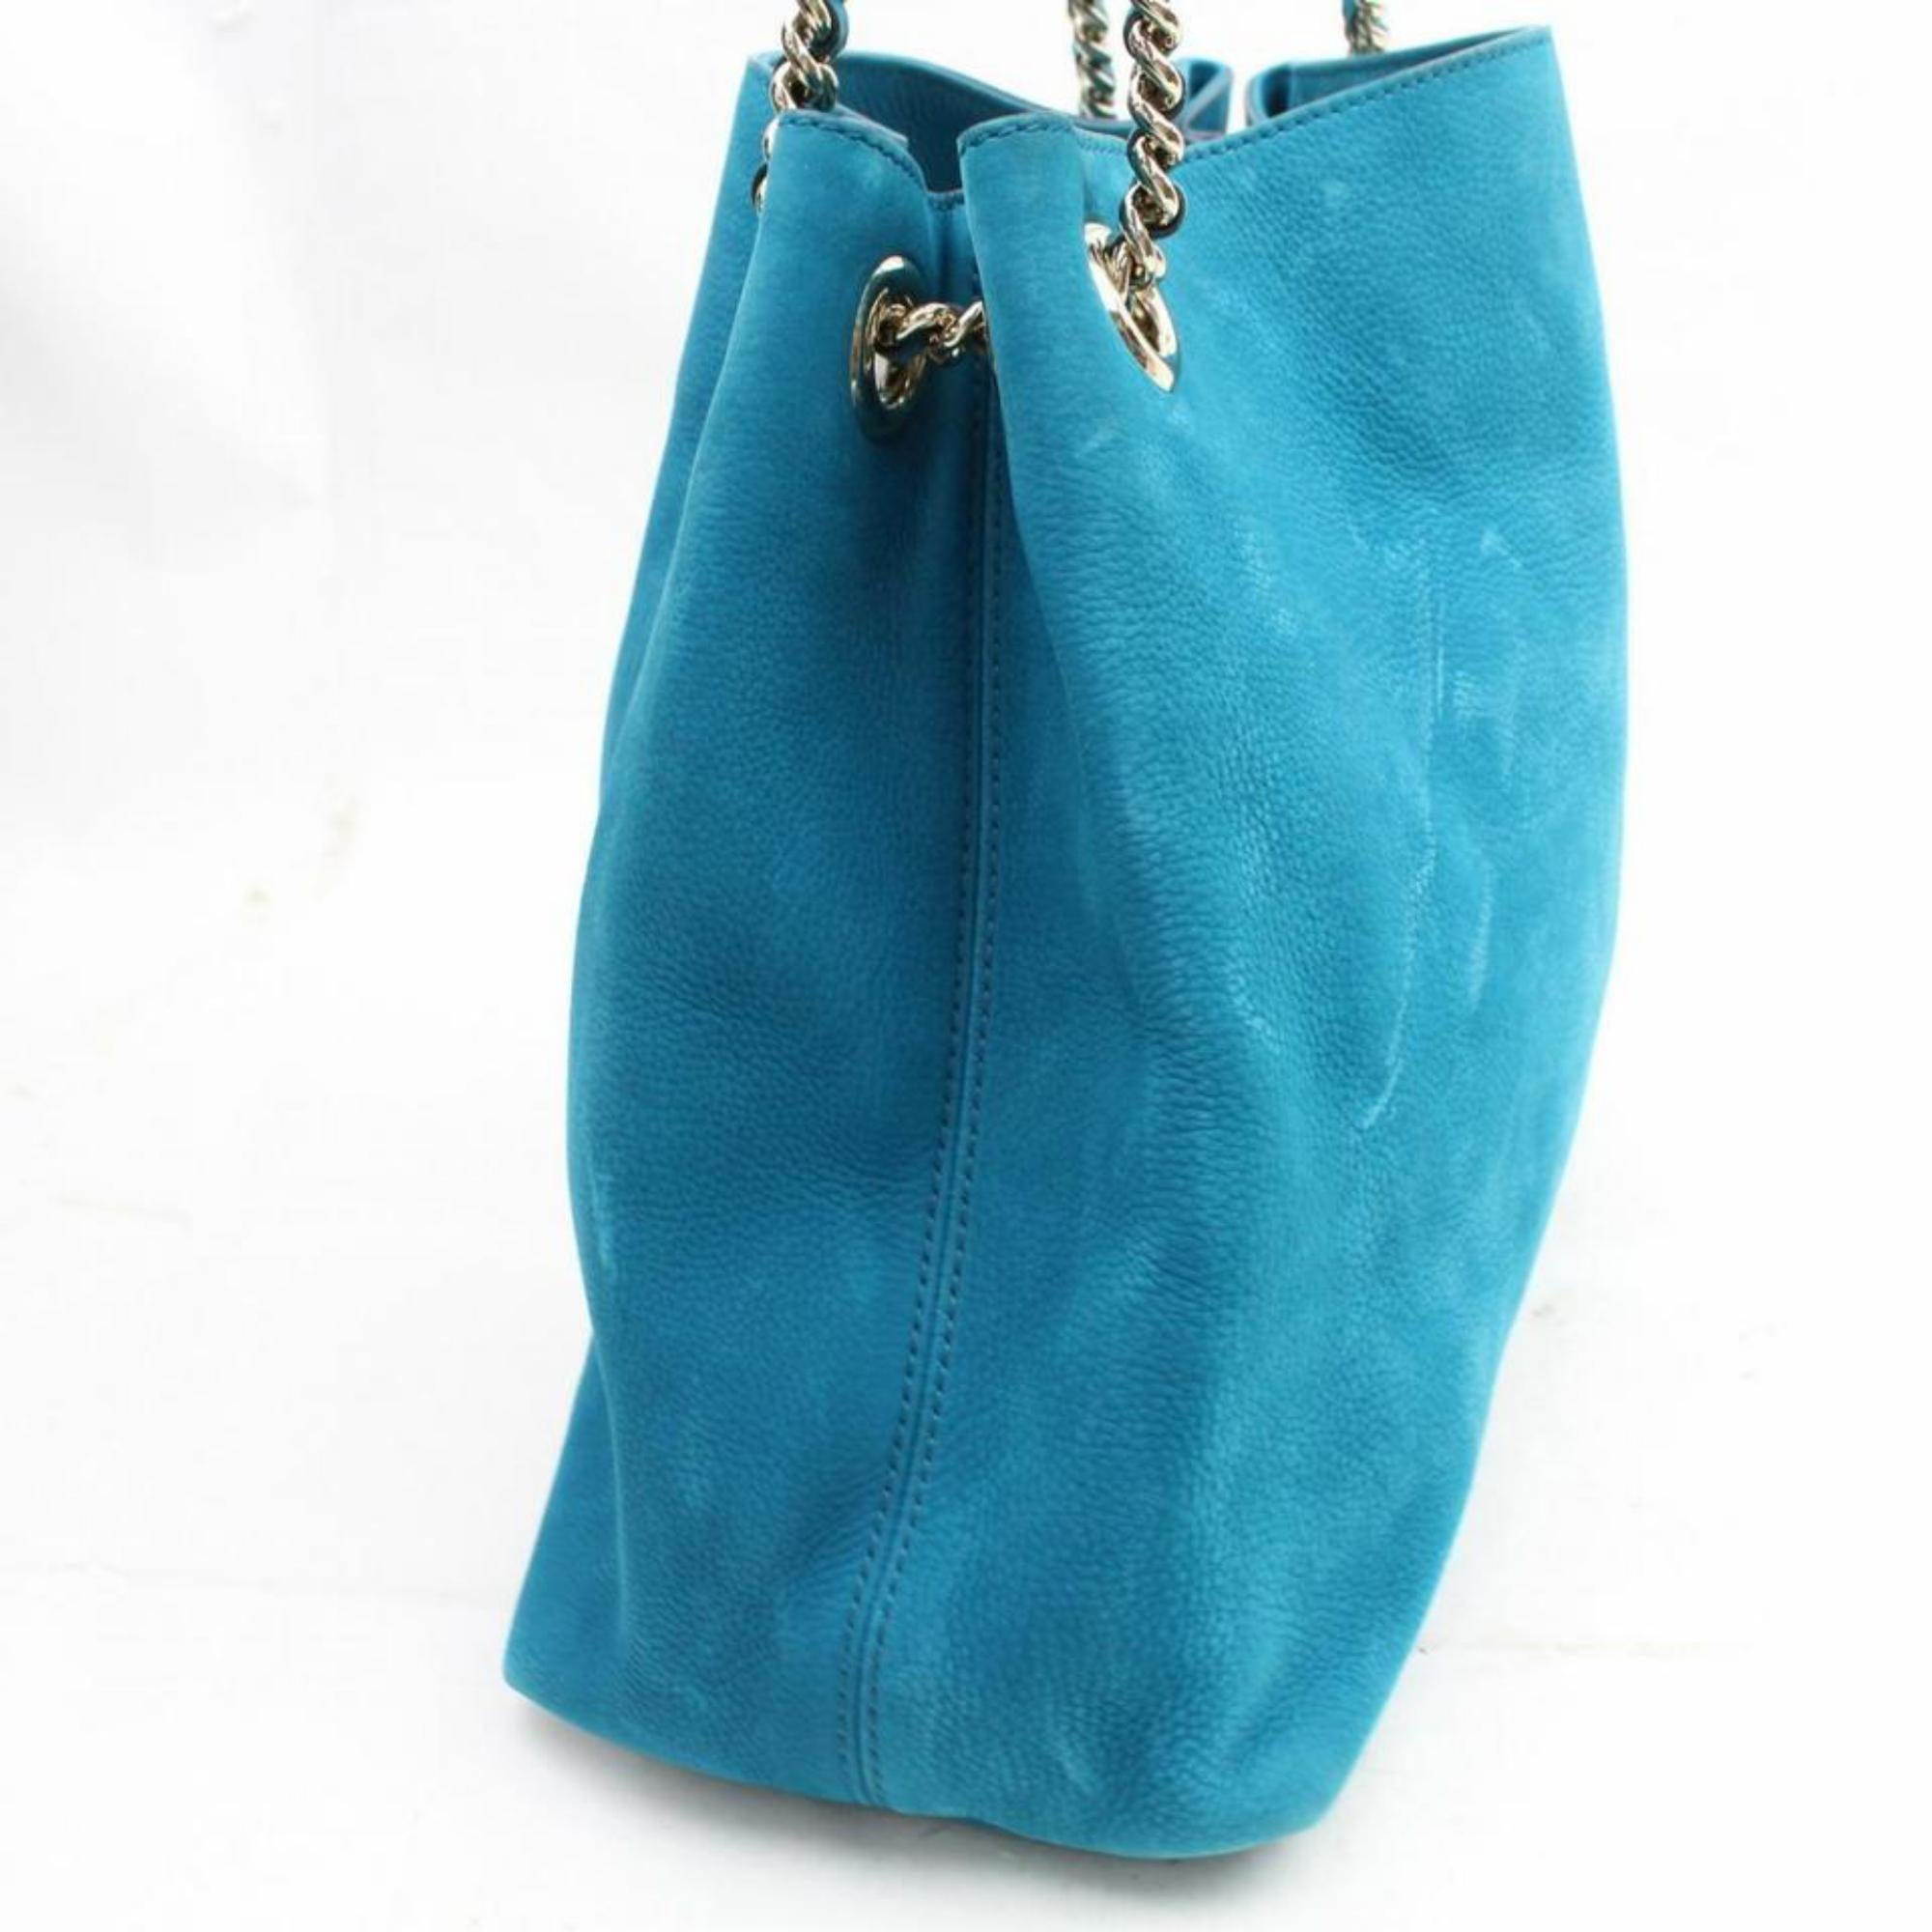 Gucci Soho Fringe Tassel Chain Tote 869786 Blue Nubuck Leather Shoulder Bag For Sale 4